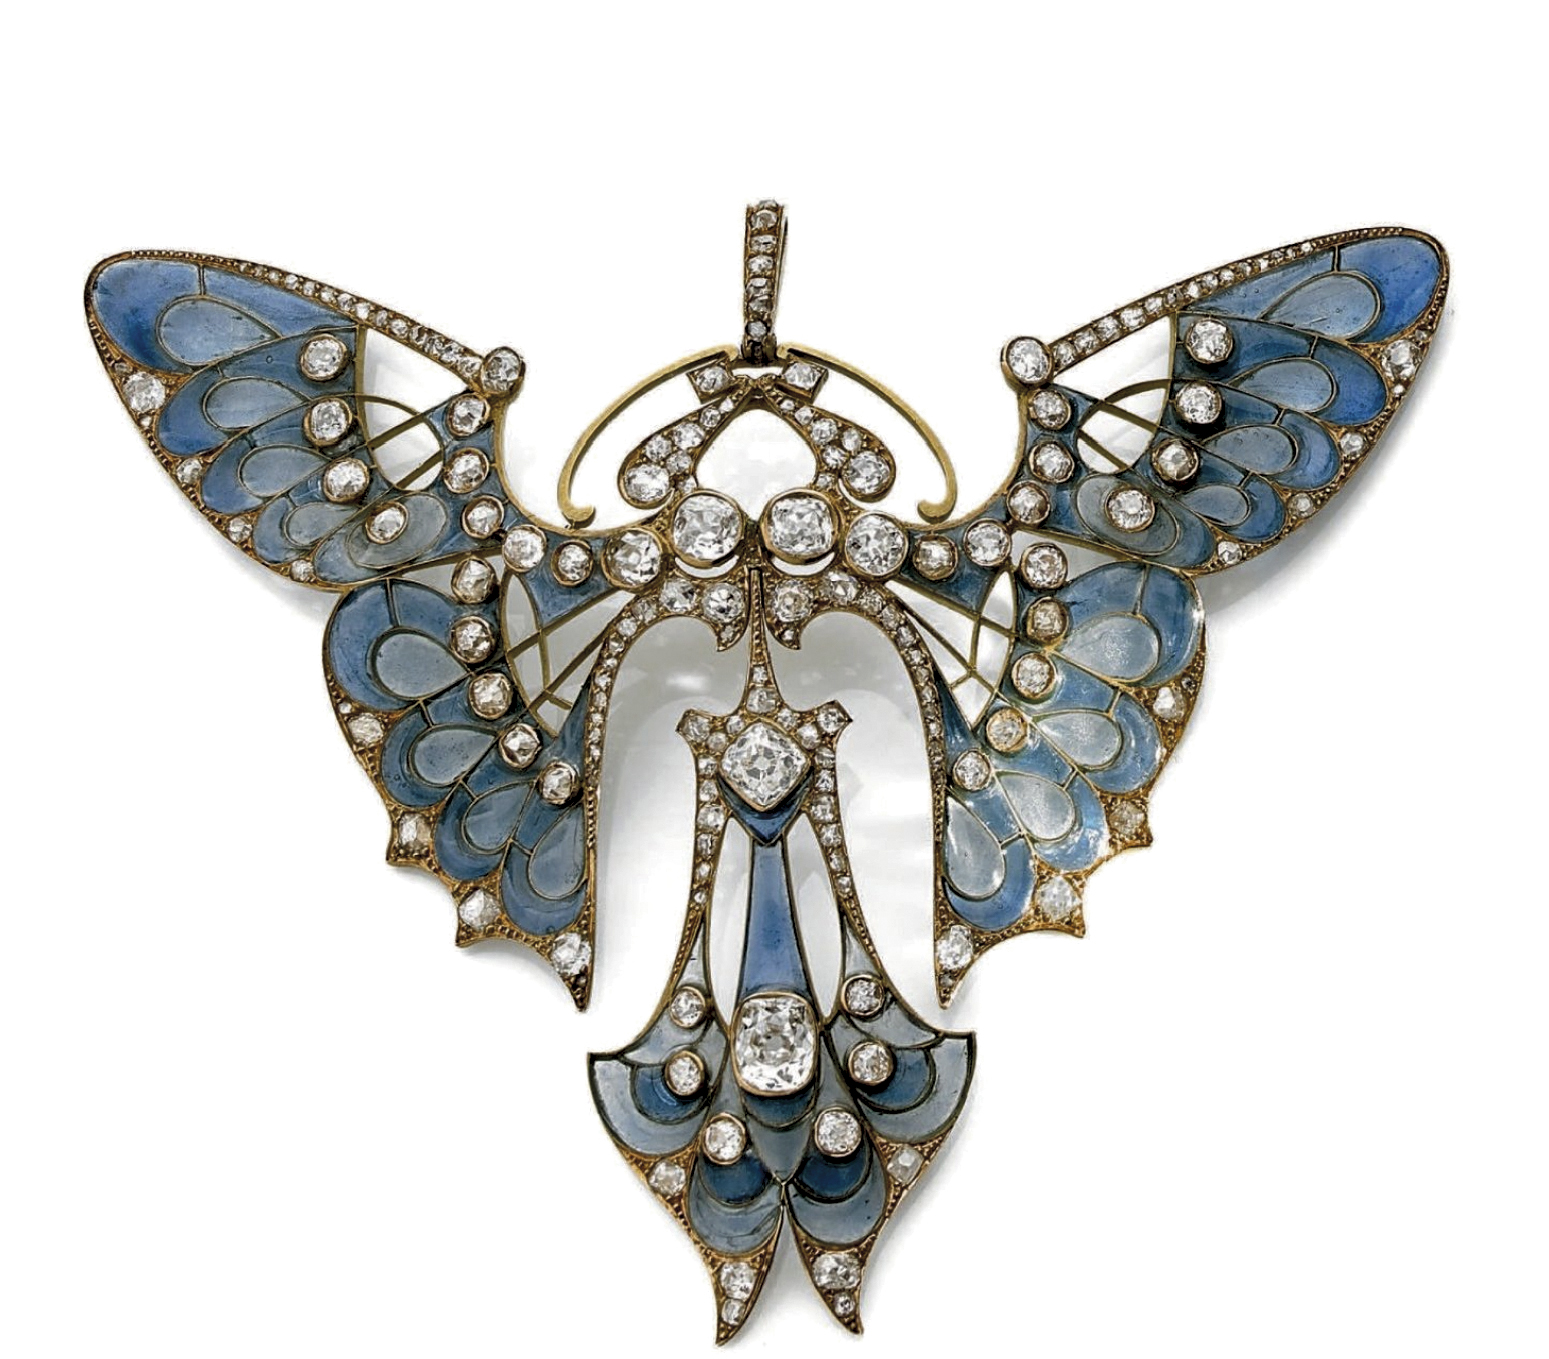 51 625 € Maison Vever, vers 1900, pendentif papillon en or jaune 18 ct, diamants taille ancienne sur un fond émaillé plique-à-jour bleu, p